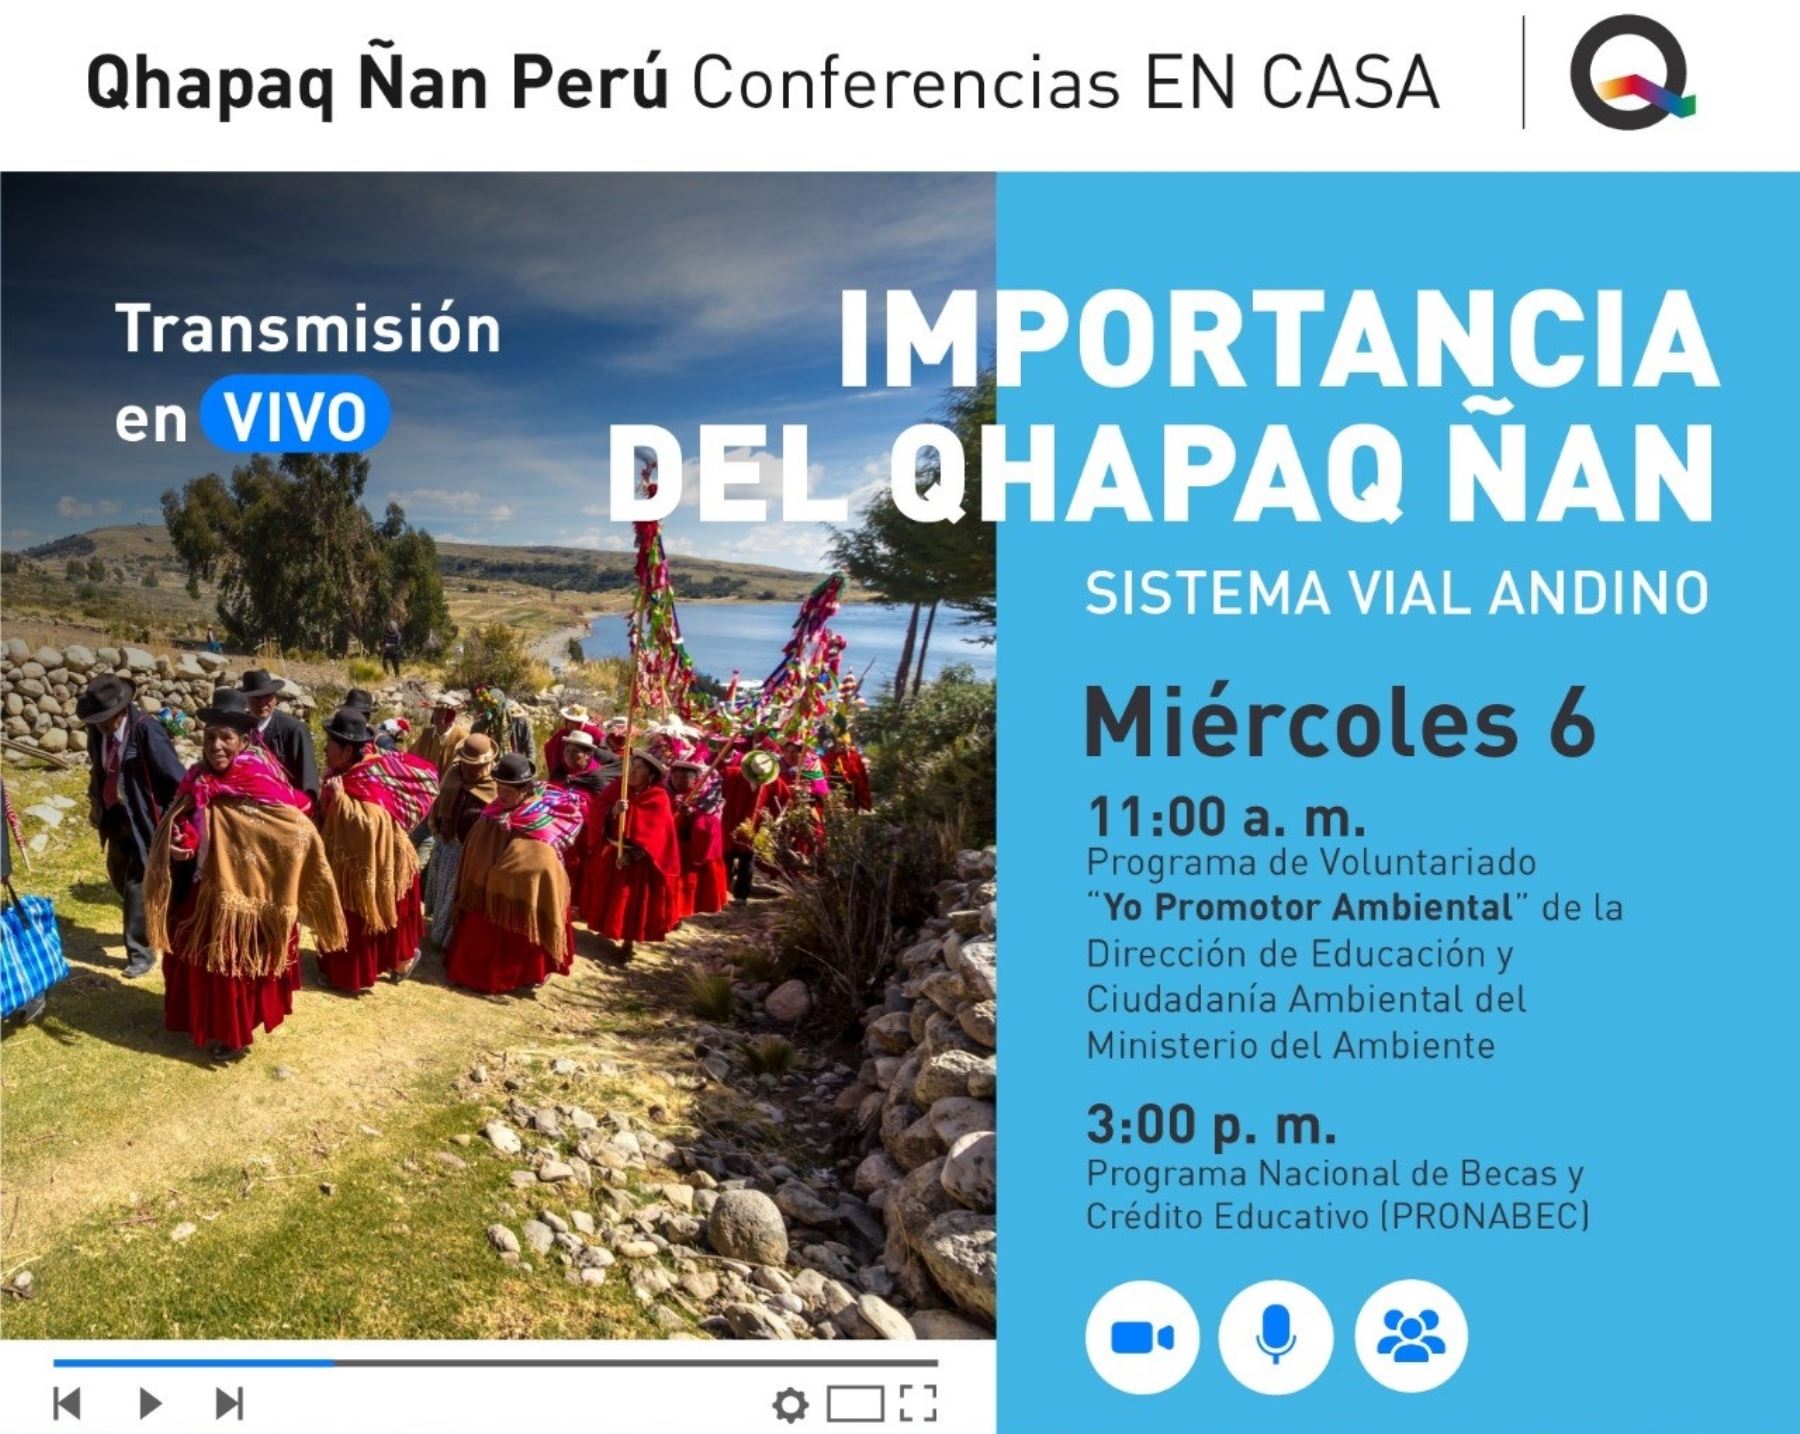 Proyecto Qhapaq Ñan ofrece videoconferencias gratuitas sobre el camino inca en español y quechua.